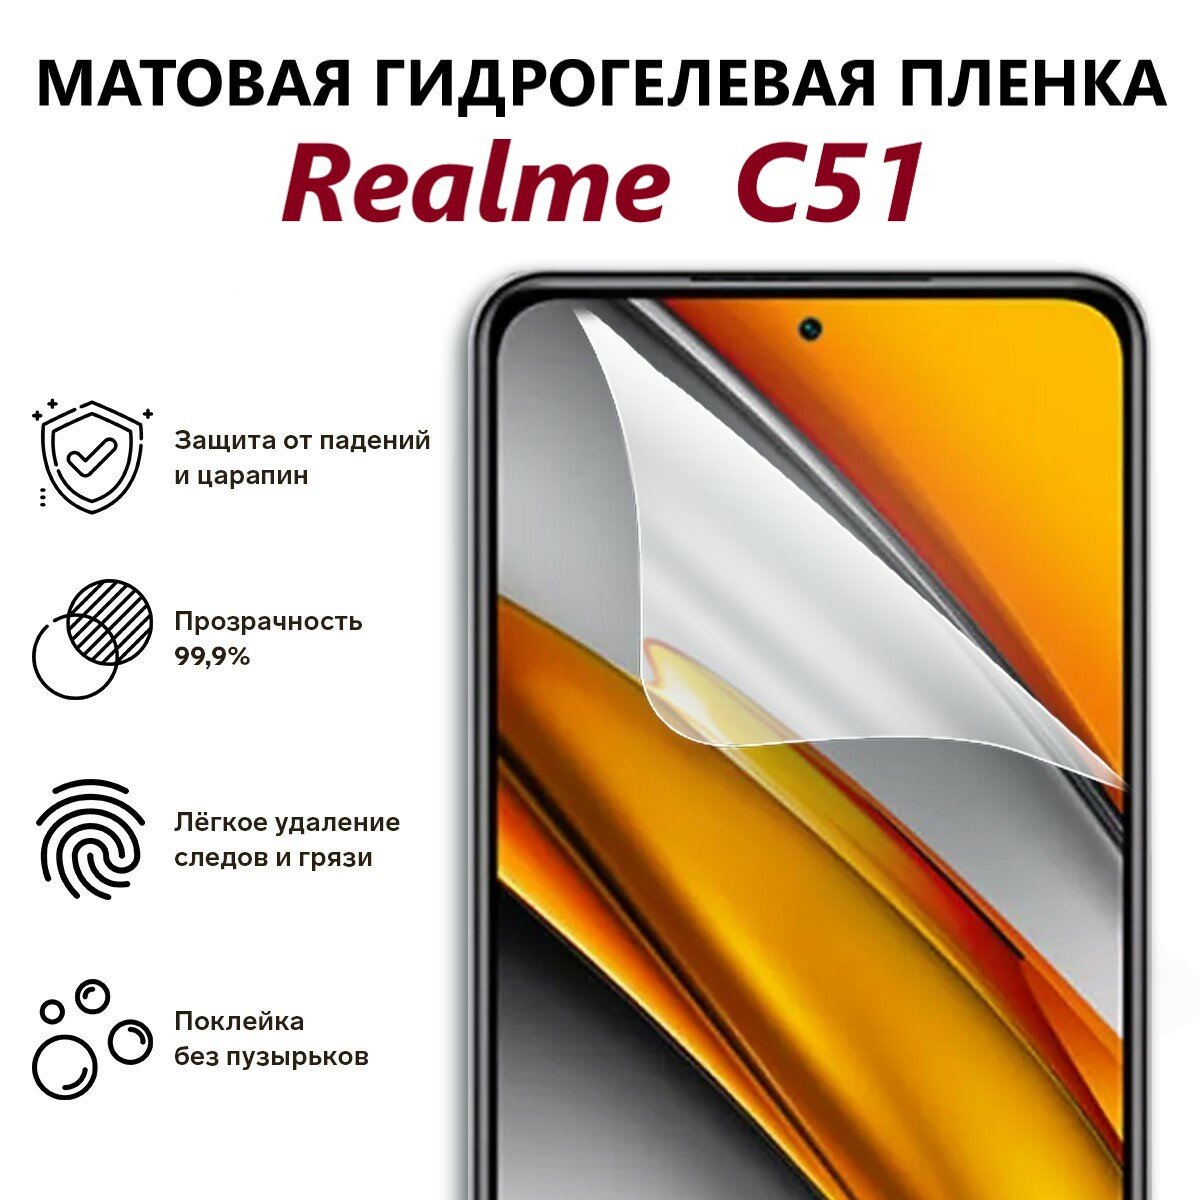 Матовая гидрогелевая пленка для Realme C51 / Полноэкранная защита телефона